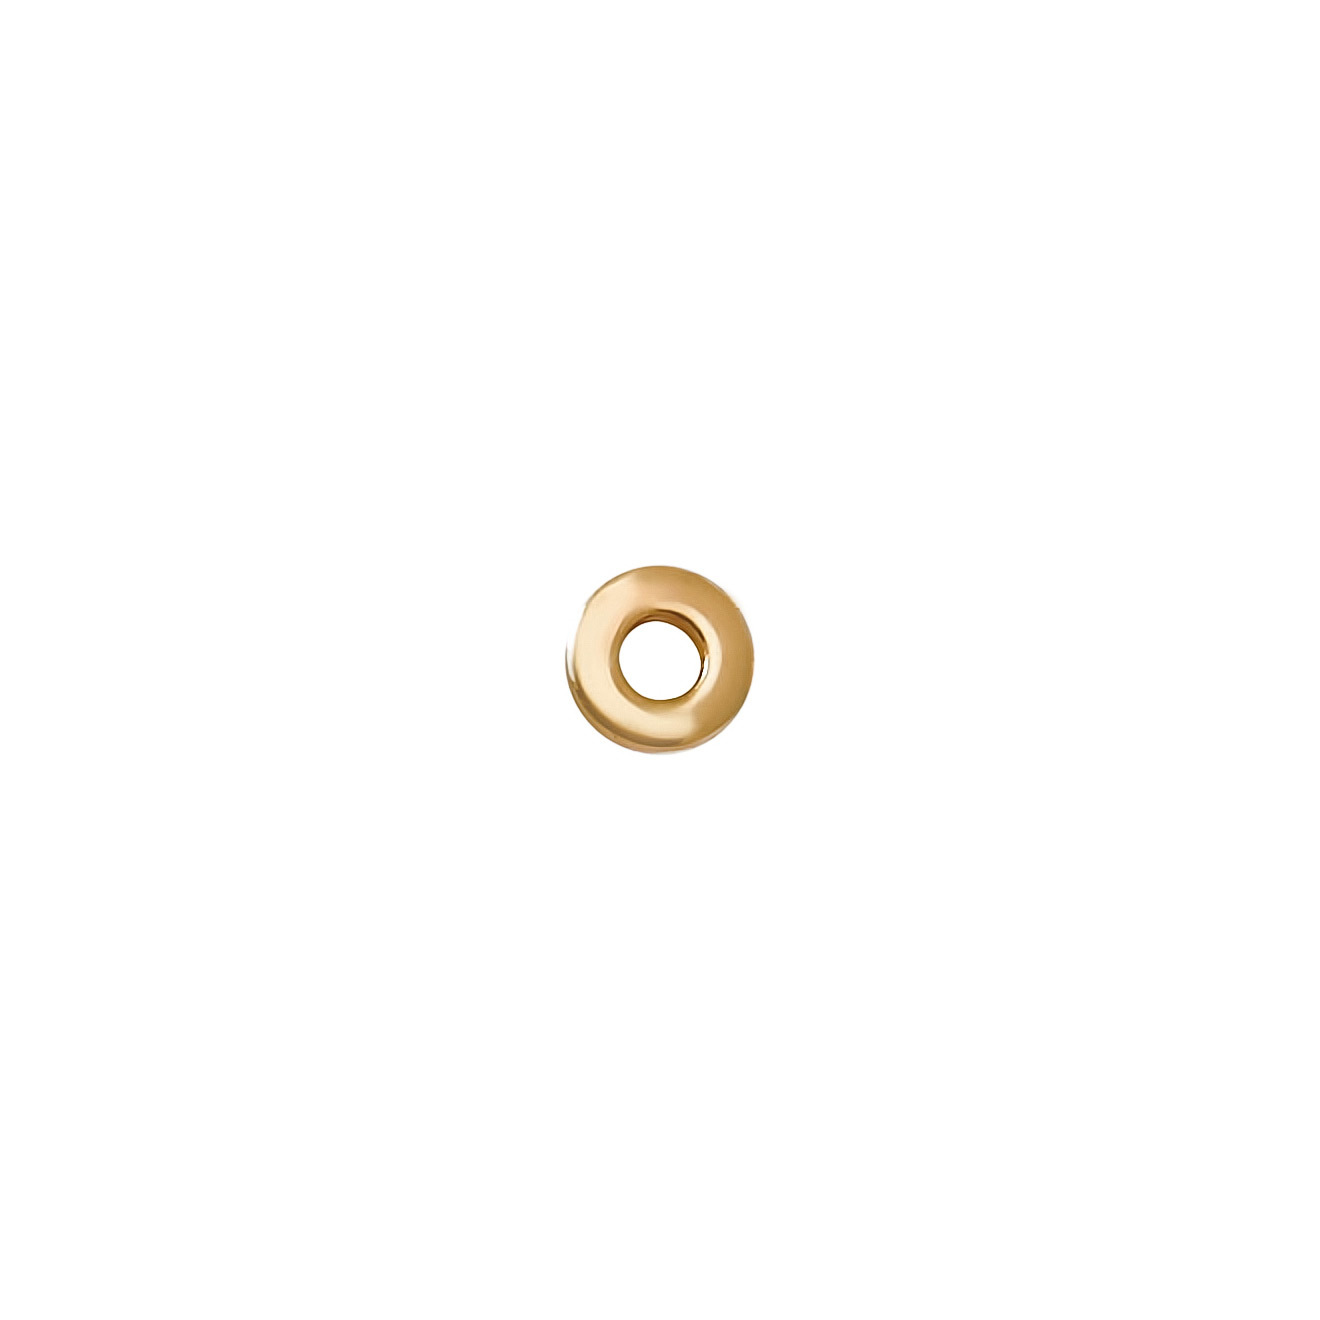 Tilda Монопусета-круг из желтого золота цена и фото